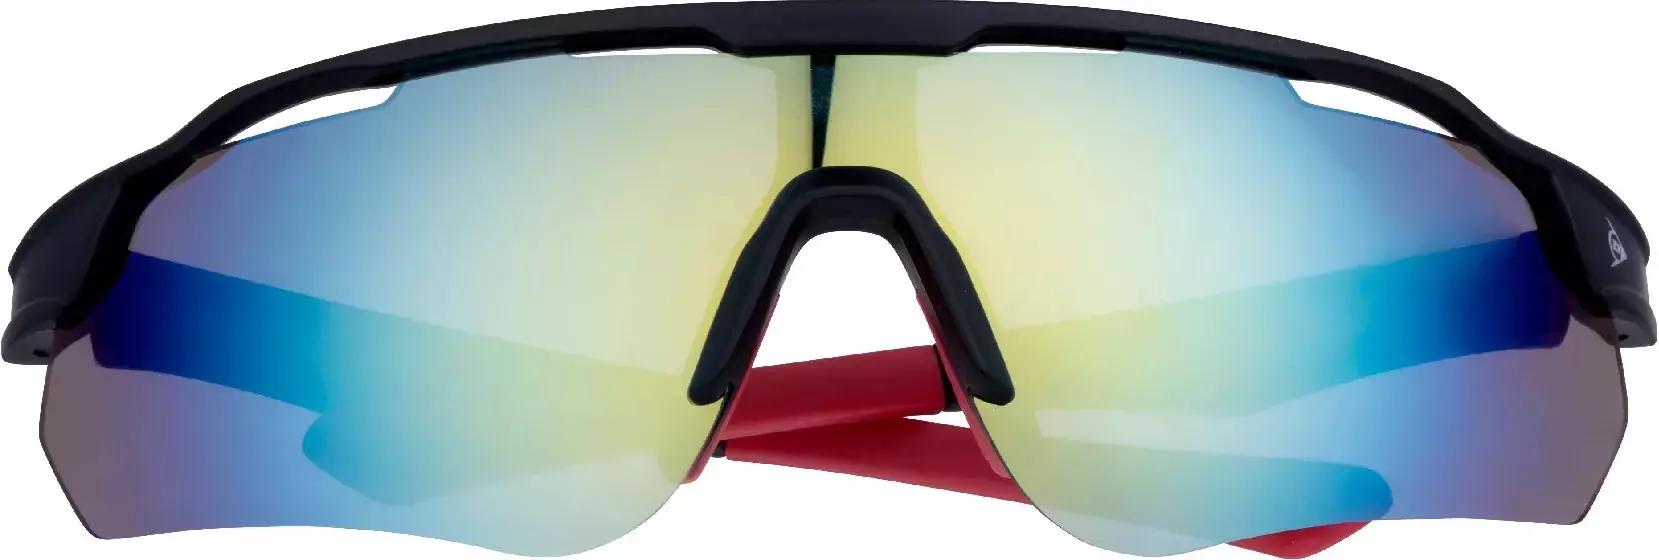 Okulary rowerowe przeciwsłoneczne DUNLOP